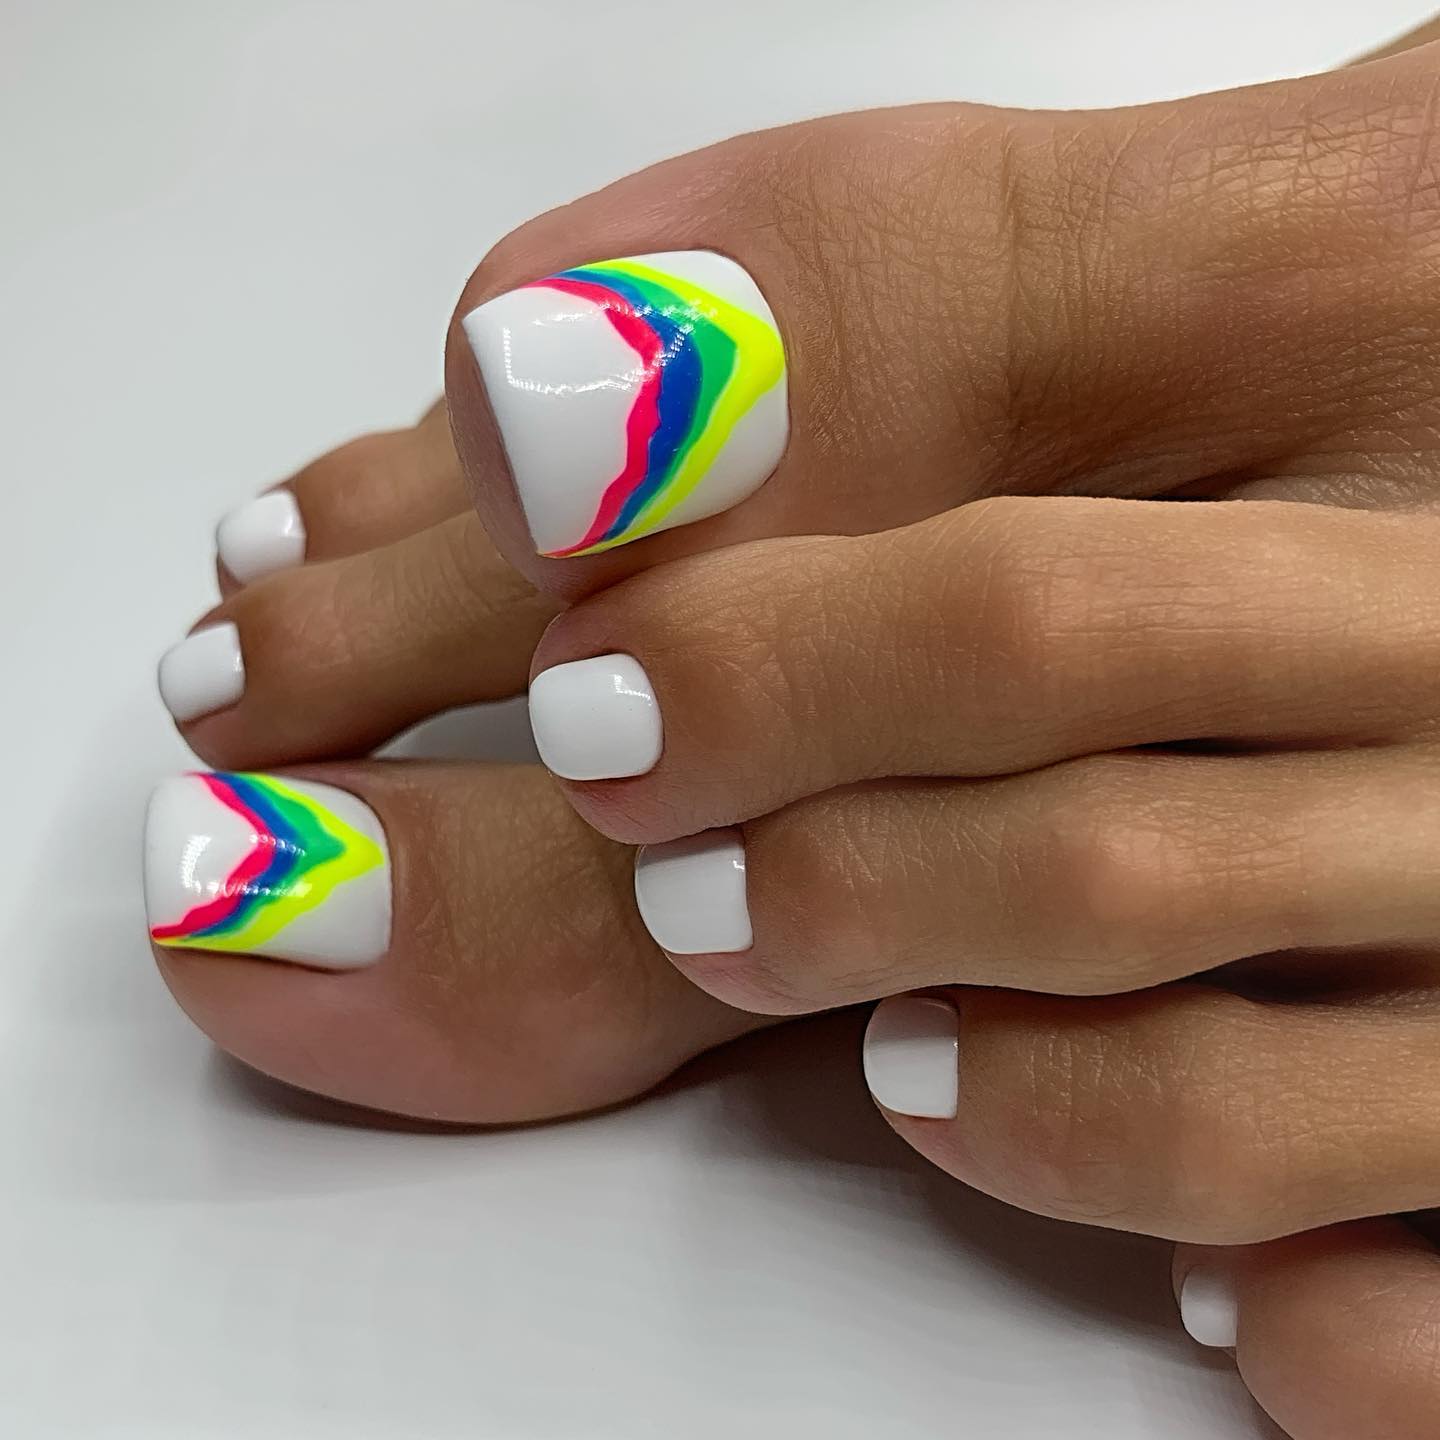 White Gloss Pedicure met Regenboog lijnen op grote tenen